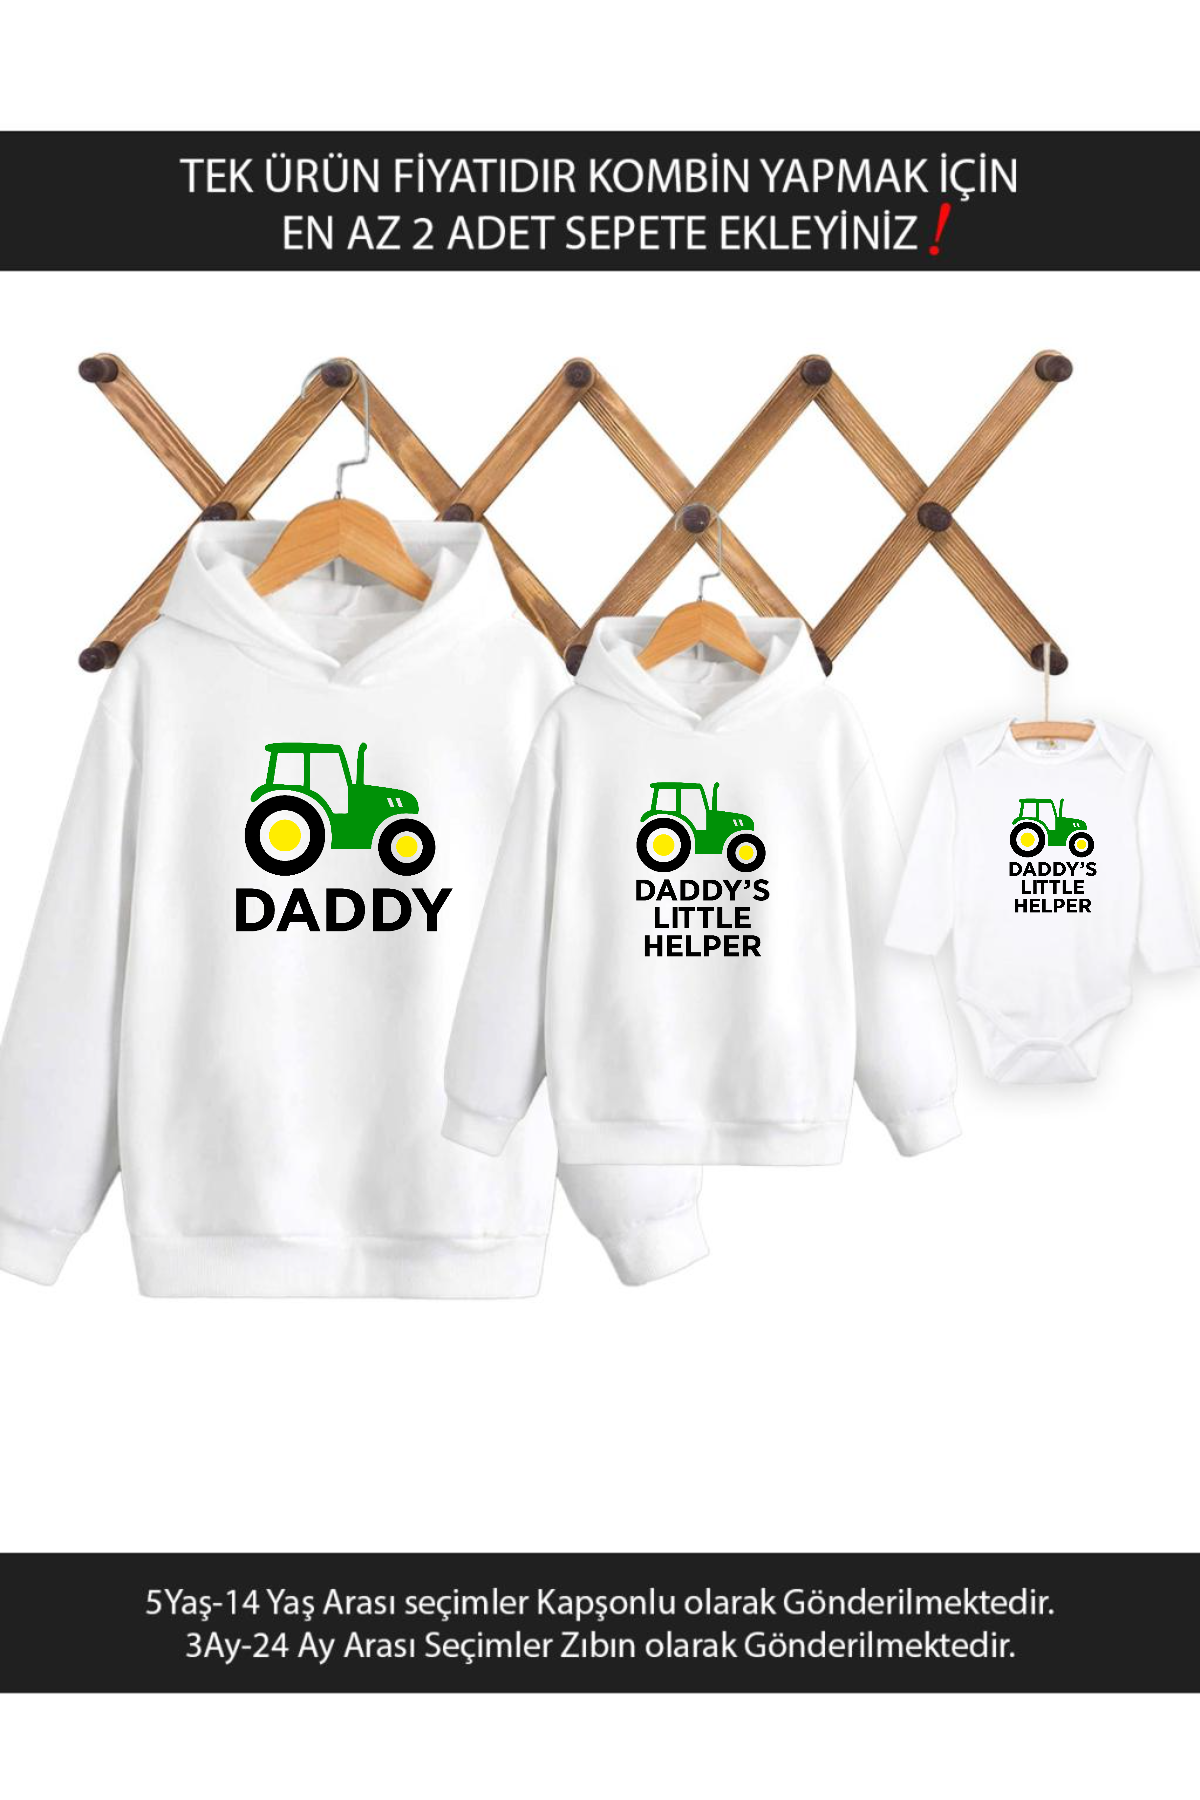 Baba Oğul Kız Traktör Daddy Helper(TEK ÜRÜN FİYATIDIR KOMBİN YAPMAK İÇİN EN AZ 2 ADET SEPETE EKLEYİN